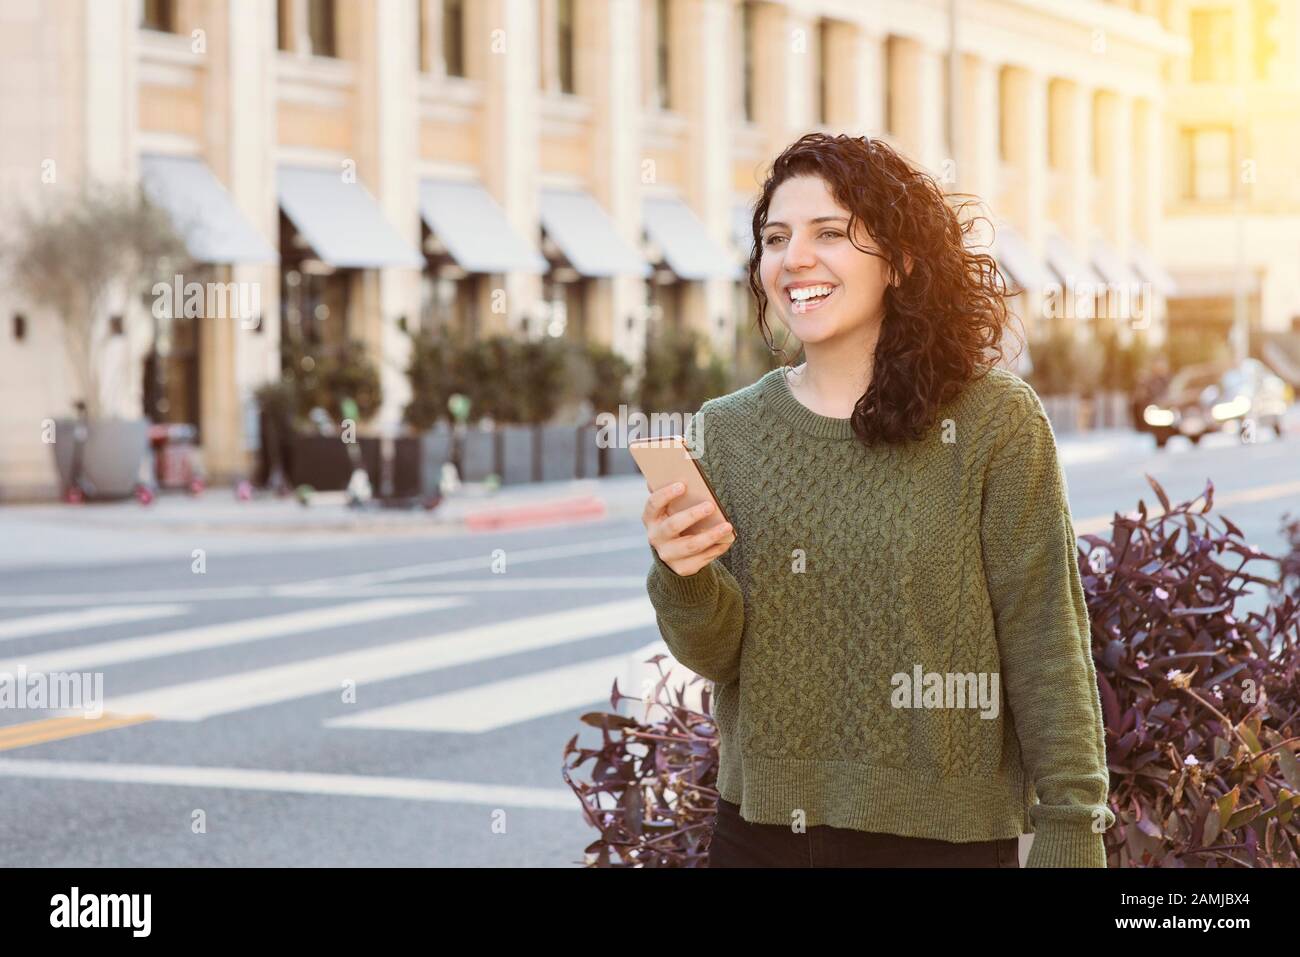 Die kaukasische Frau hält ihr Handy, während sie in der Stadt auf einen ab uber wartet - Warmes Licht am Tag - Konzept glücklich mit der Technologie Stockfoto